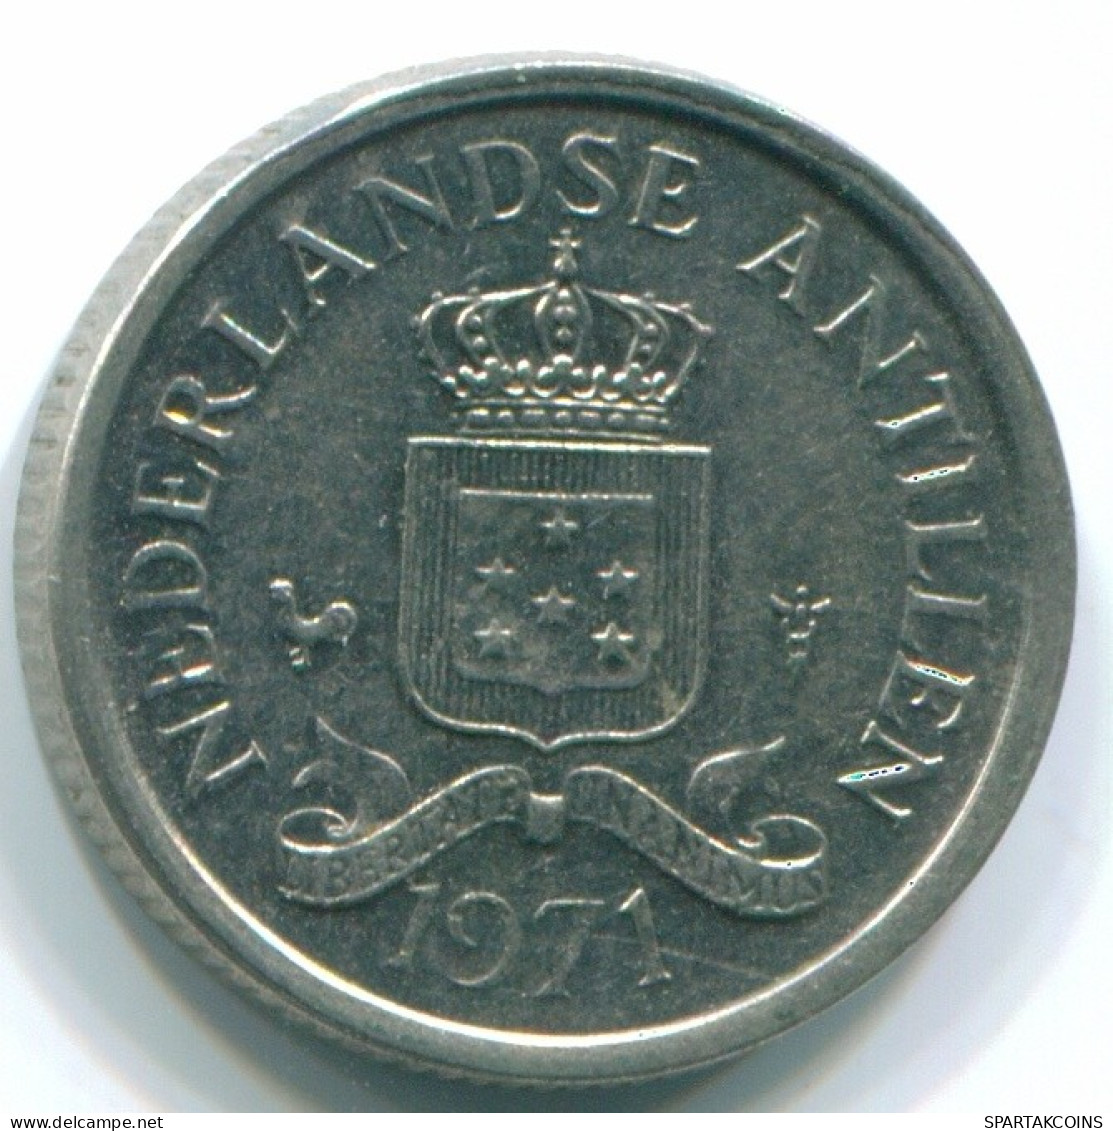 10 CENTS 1971 NIEDERLÄNDISCHE ANTILLEN Nickel Koloniale Münze #S13461.D.A - Niederländische Antillen